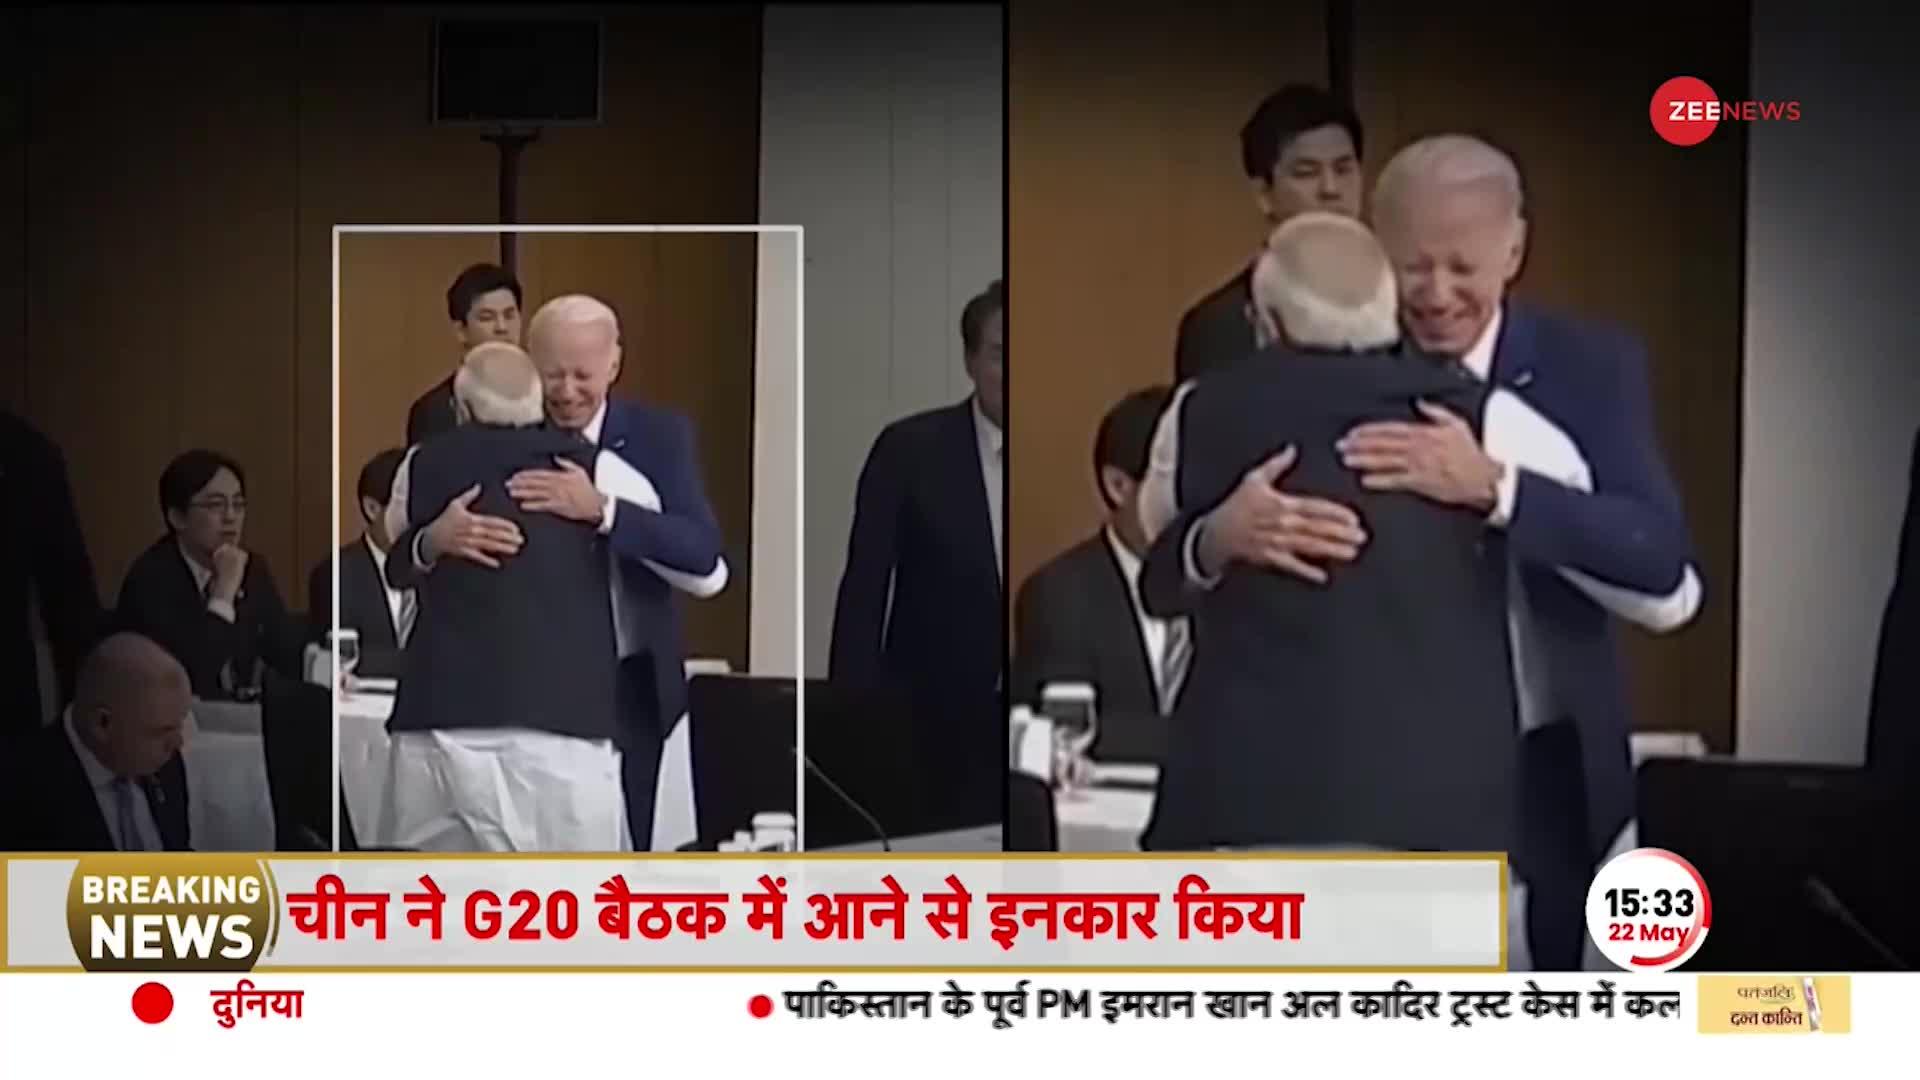 पापुआ न्यू गिनी के पीएम ने क्यों छूए थे PM Modi के पैर, देखें वीडियो